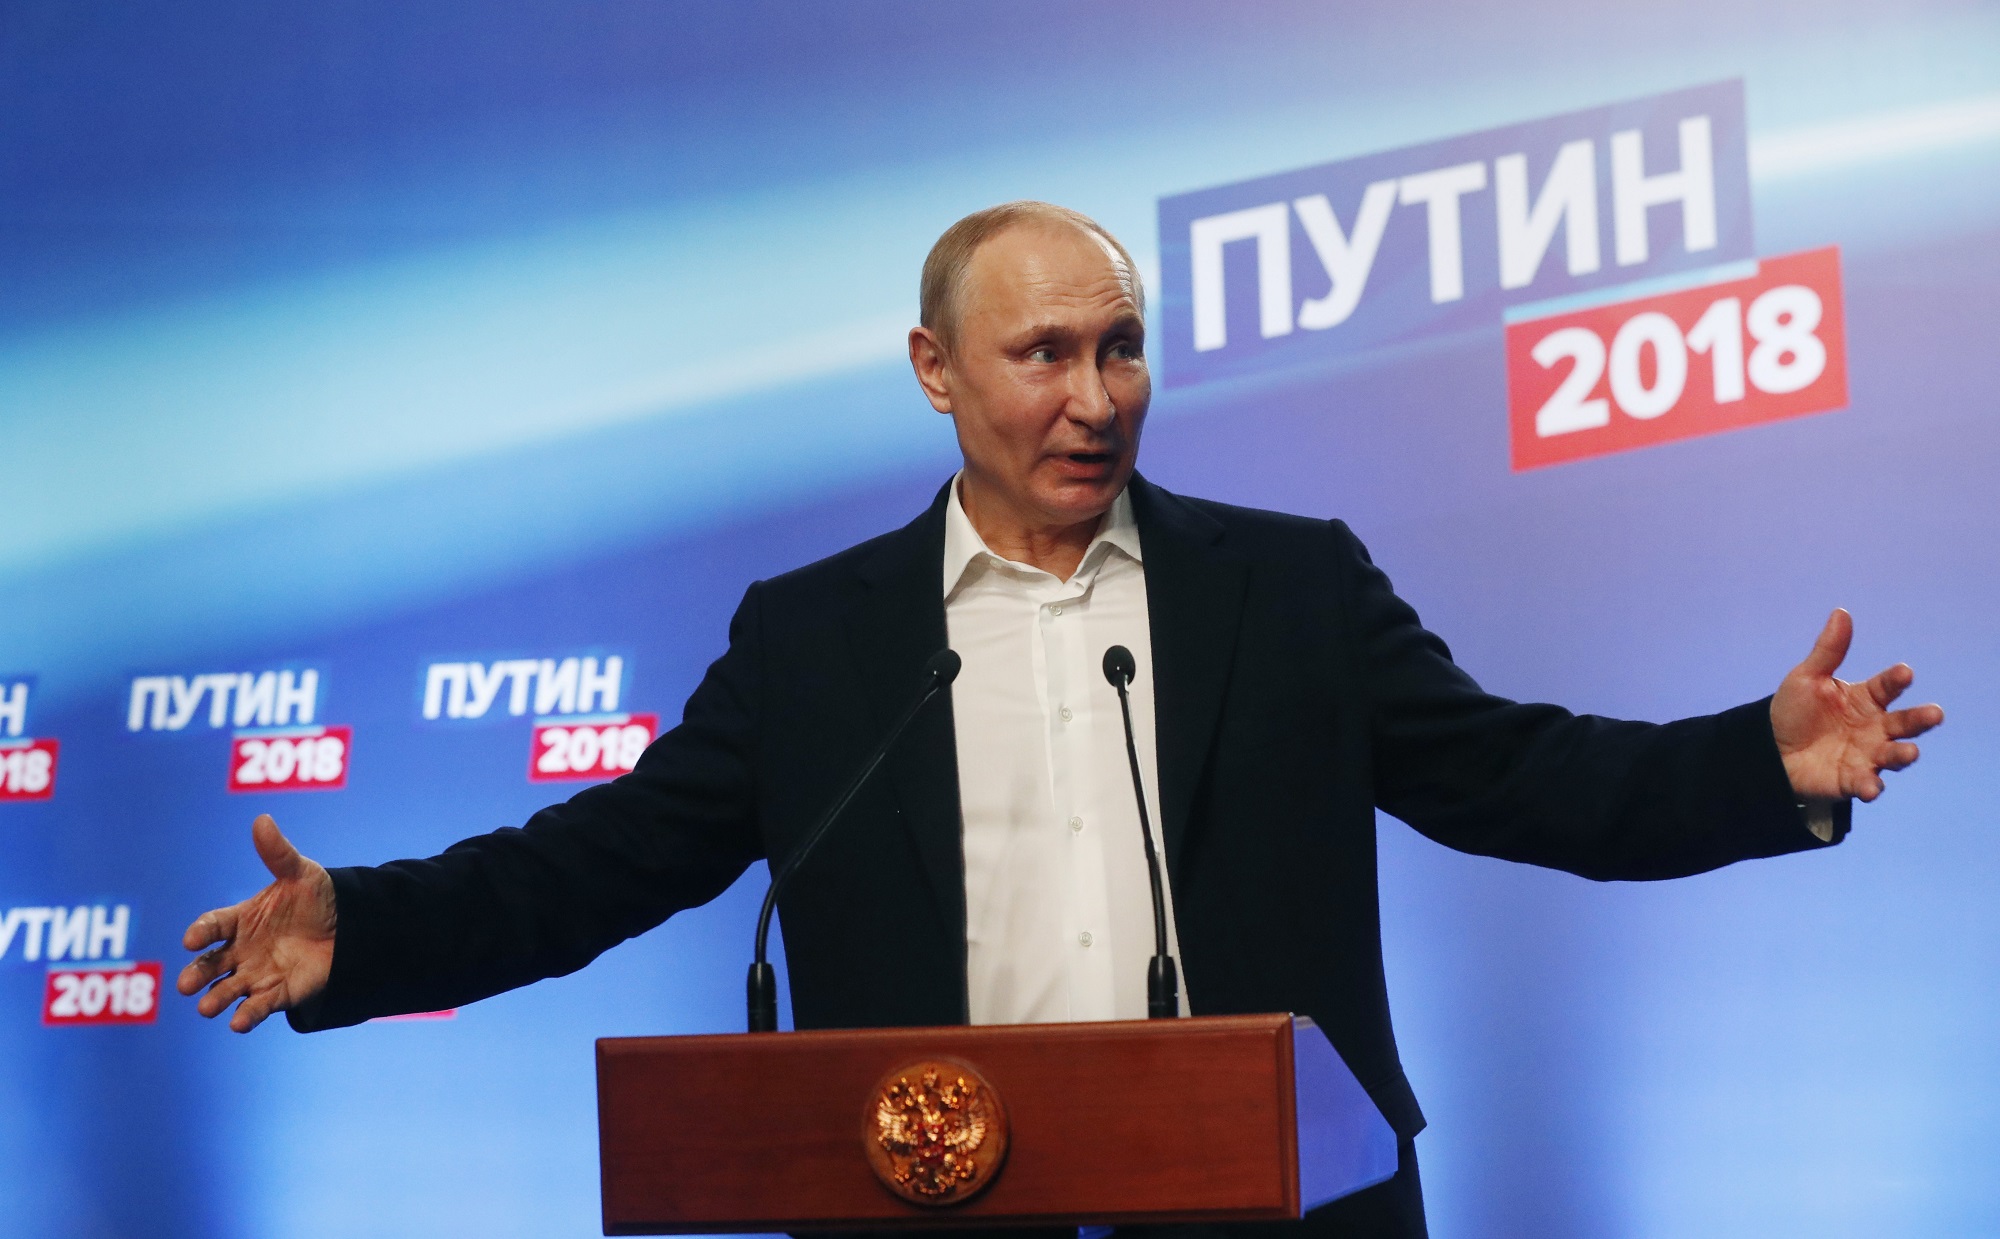 Ông Putin tin tưởng rằng nước Nga có thể tạo ra bước đột phá trong tương lai, đồng thời kêu gọi các lực lượng chính trị hành động dựa trên lợi ích của nước Nga. (Nguồn: AFP/TTXVN)